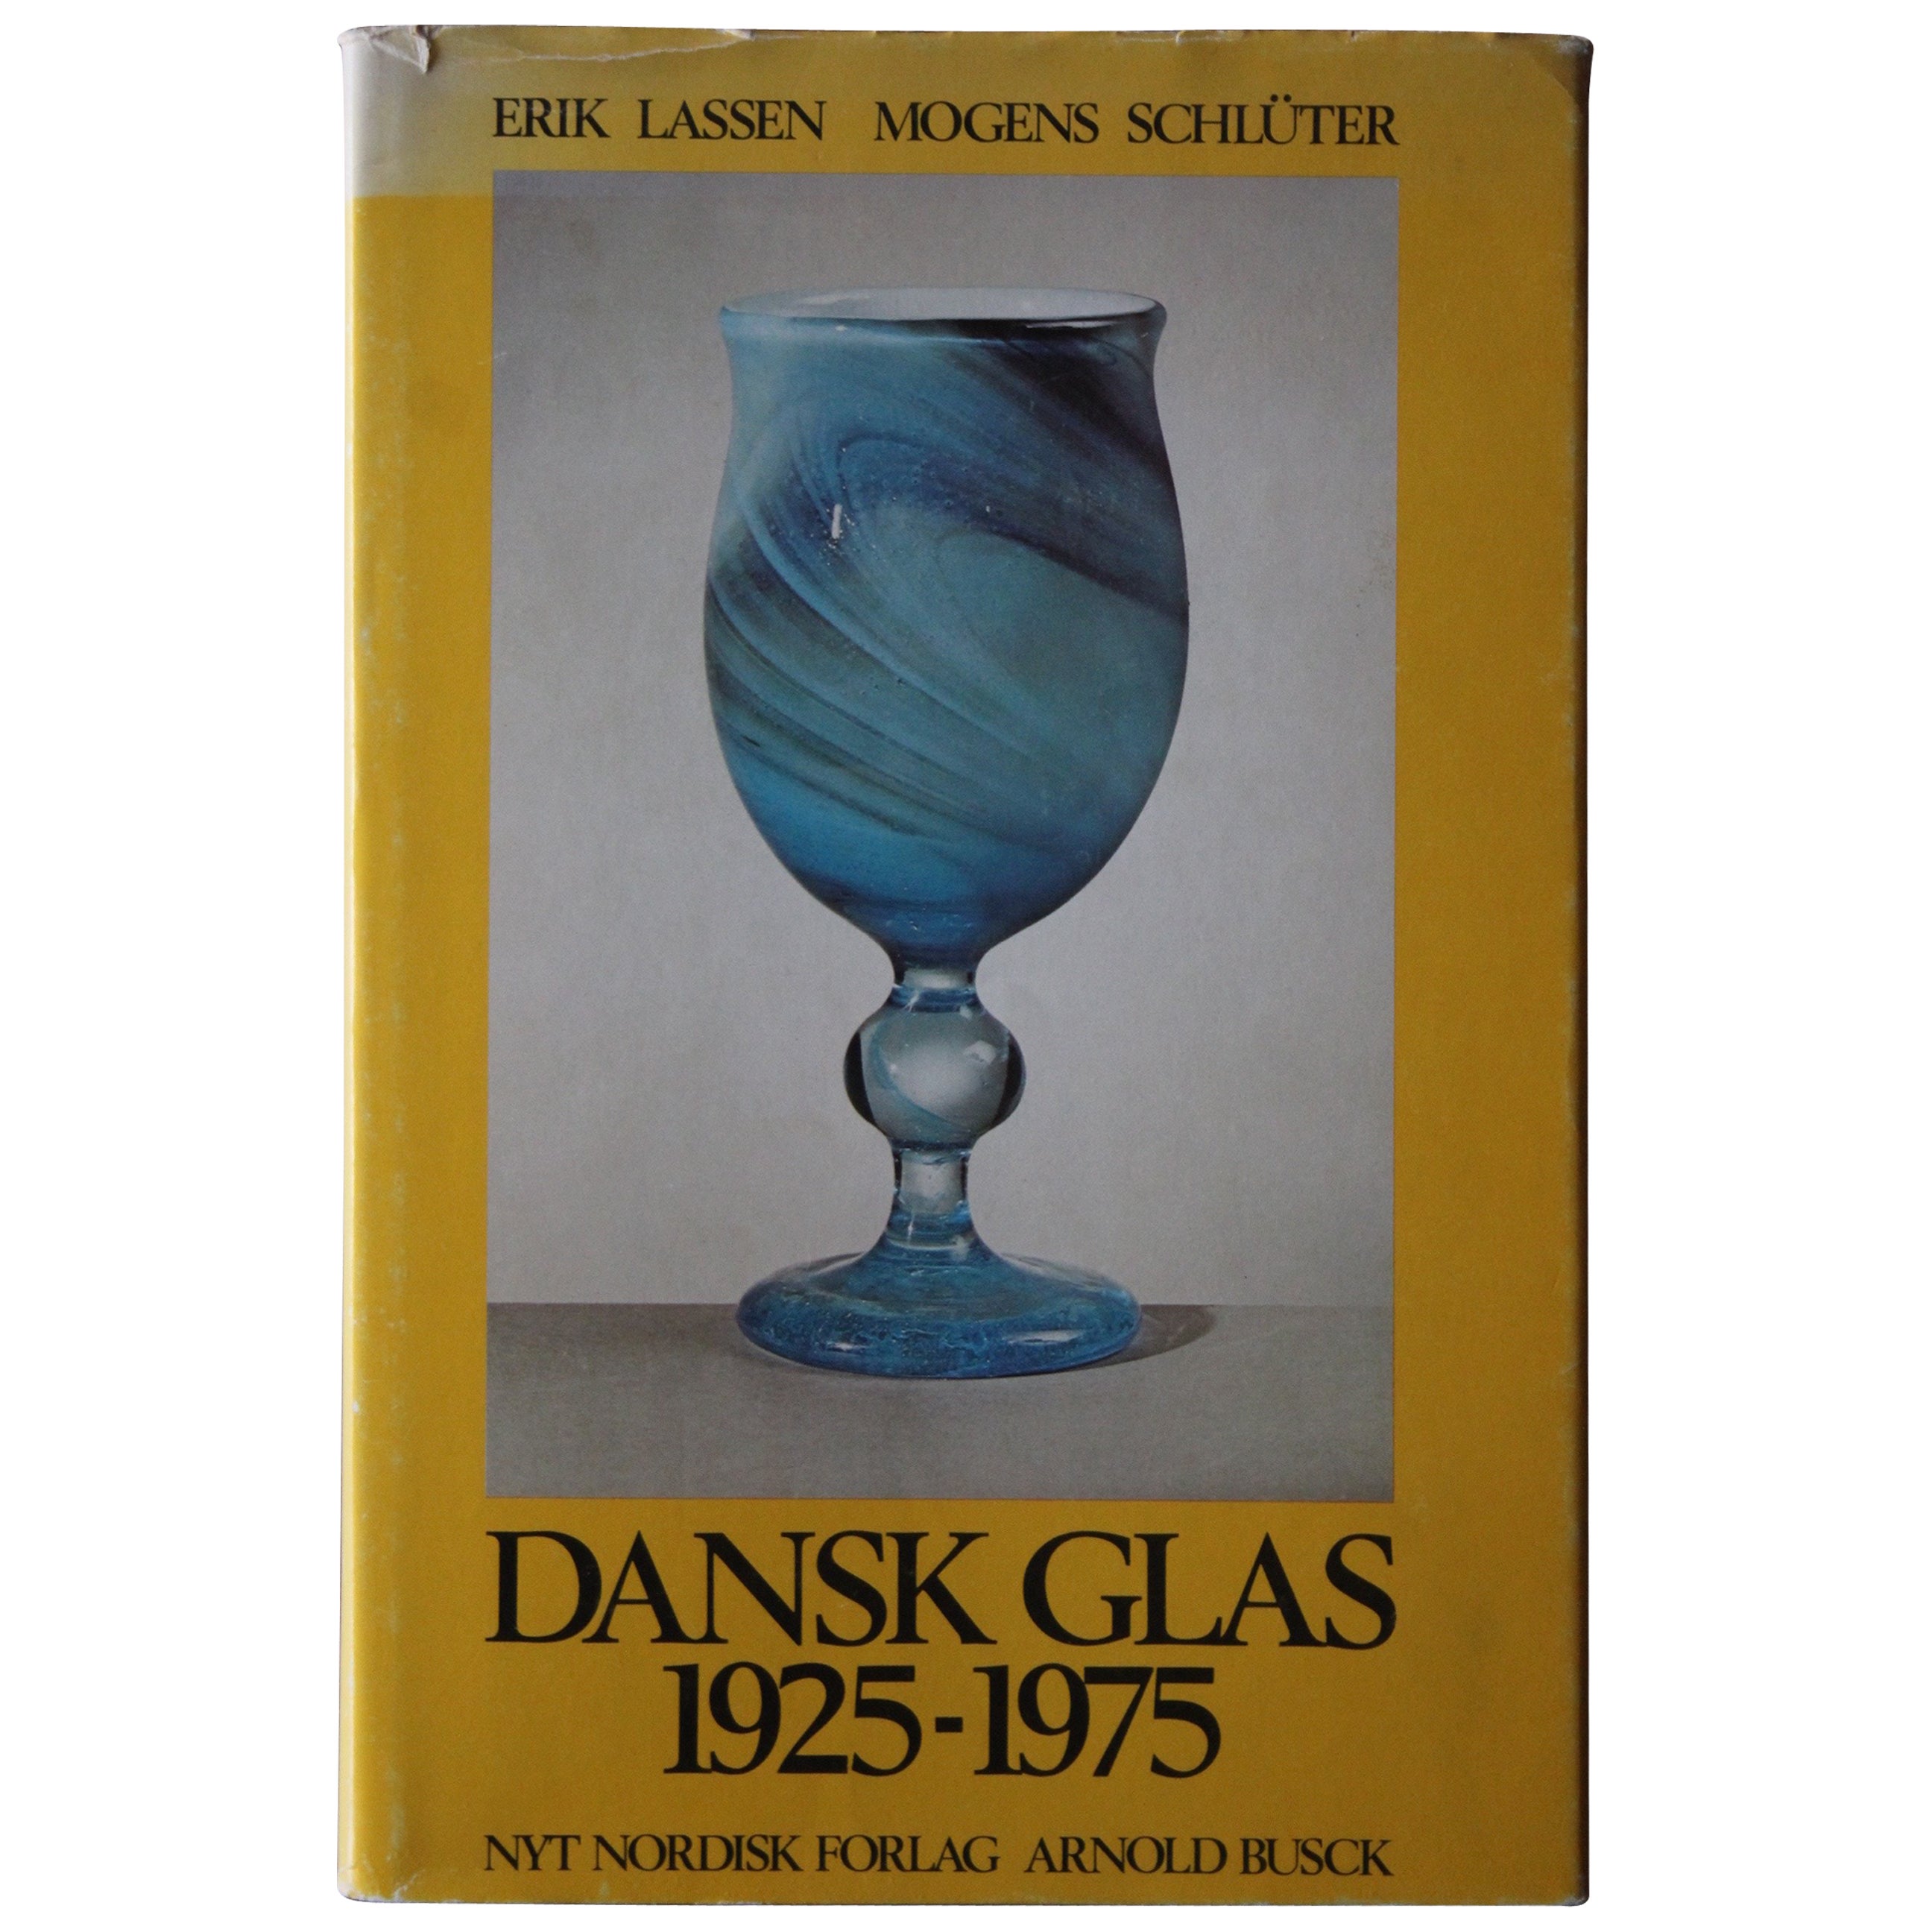 Dansk Glas 1925-1975" Book For Sale at 1stdibs